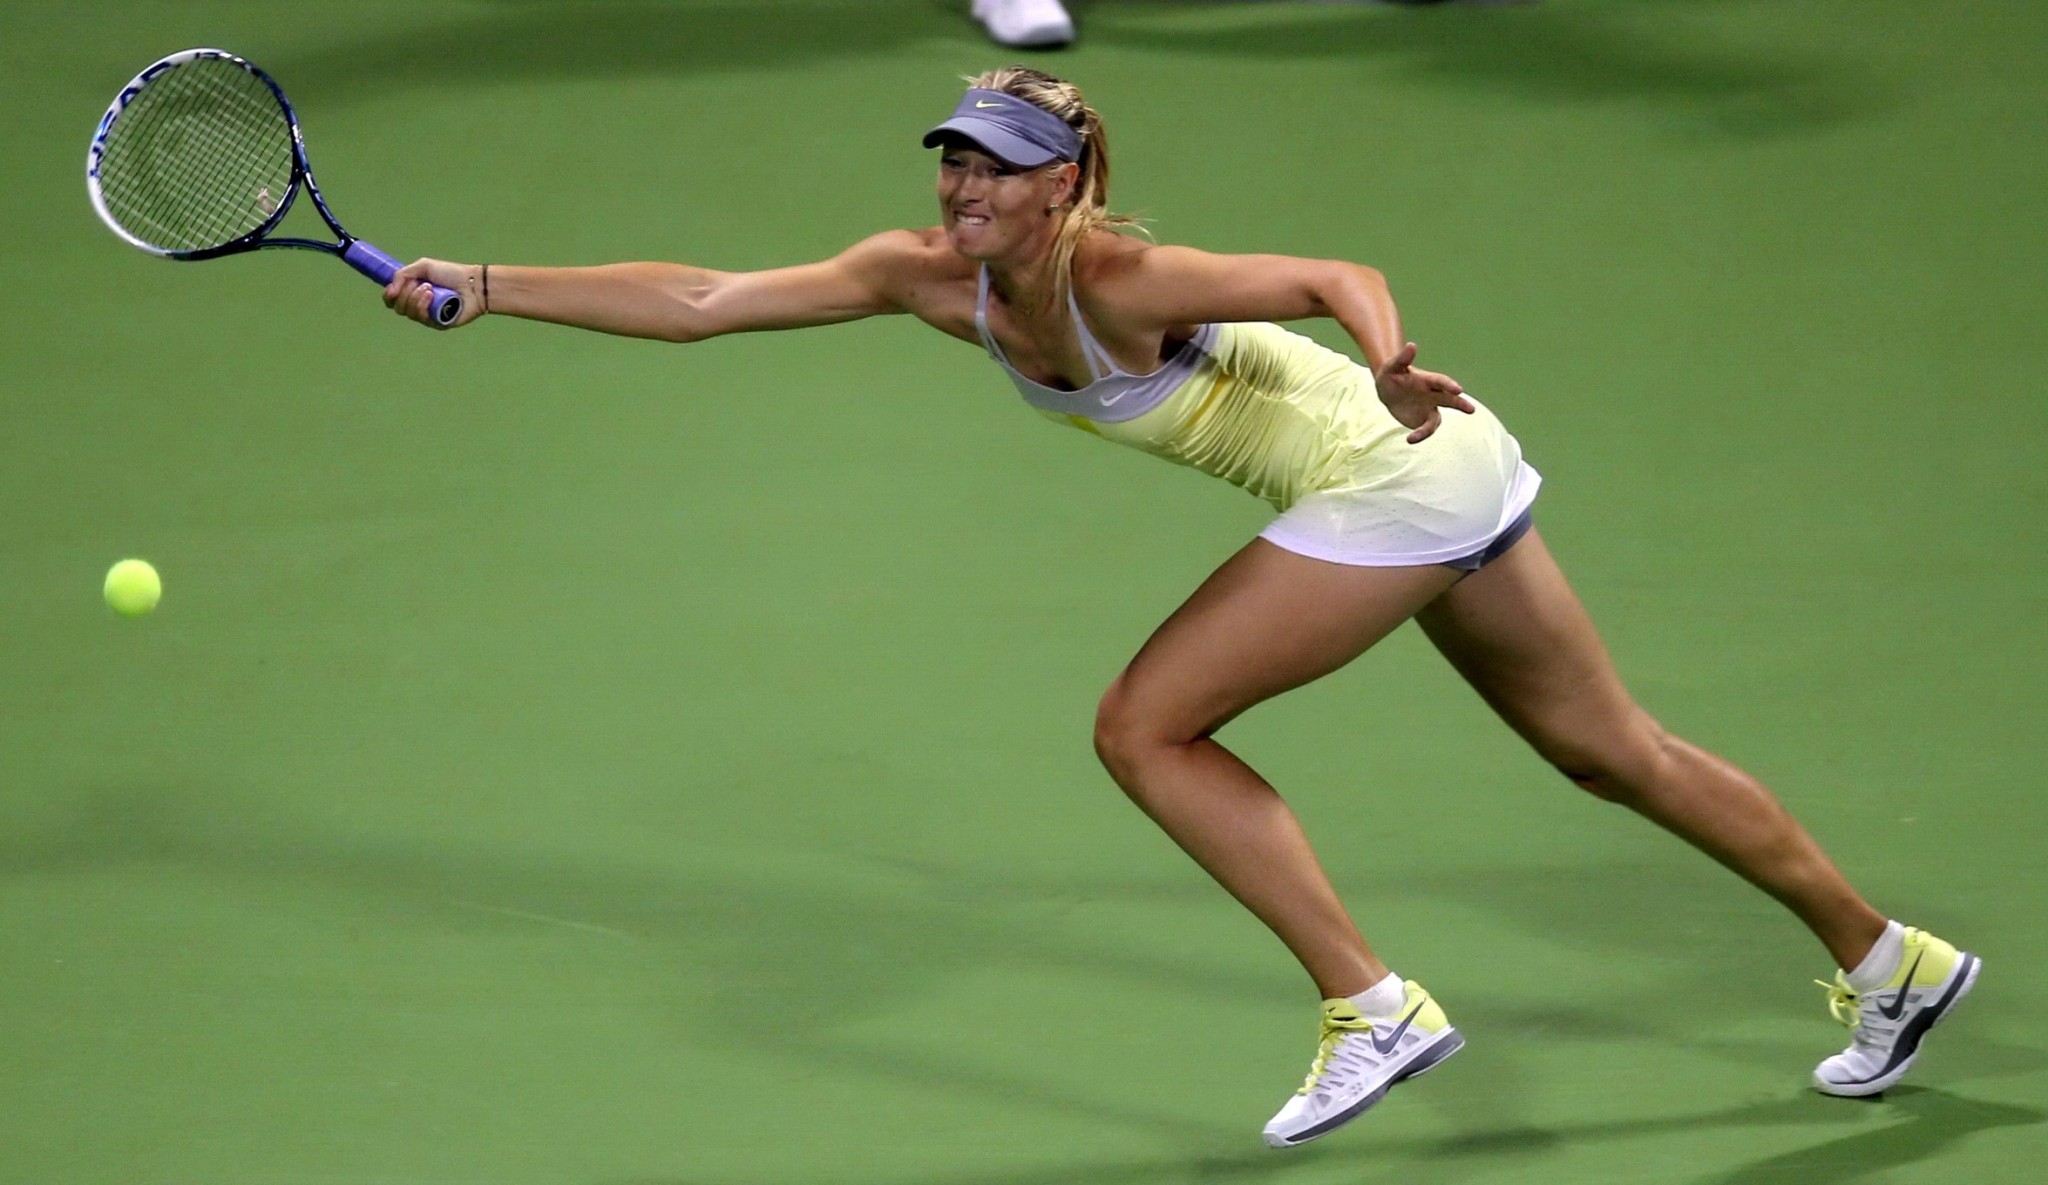 Maria sharapova en jupe haute au tournoi de tennis wta qatar open à doha
 #75241203